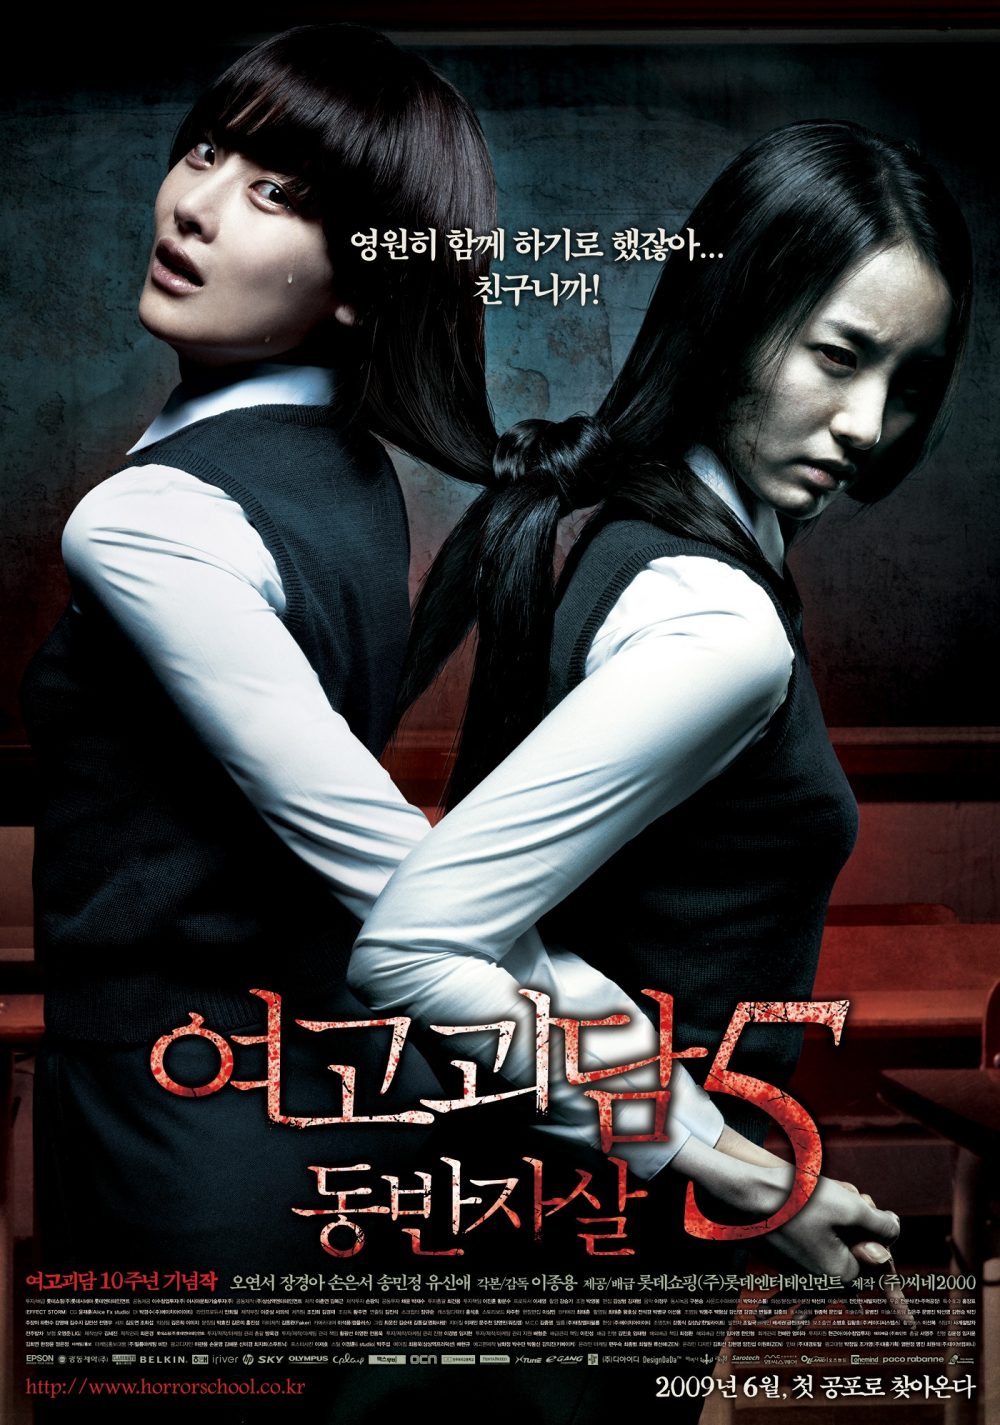 Phim yêu tinh kinh dị Nước Hàn hoặc nhất từng thời đại: Hành thầy thuốc thì thì thầm - Whispering Corridors (1998)